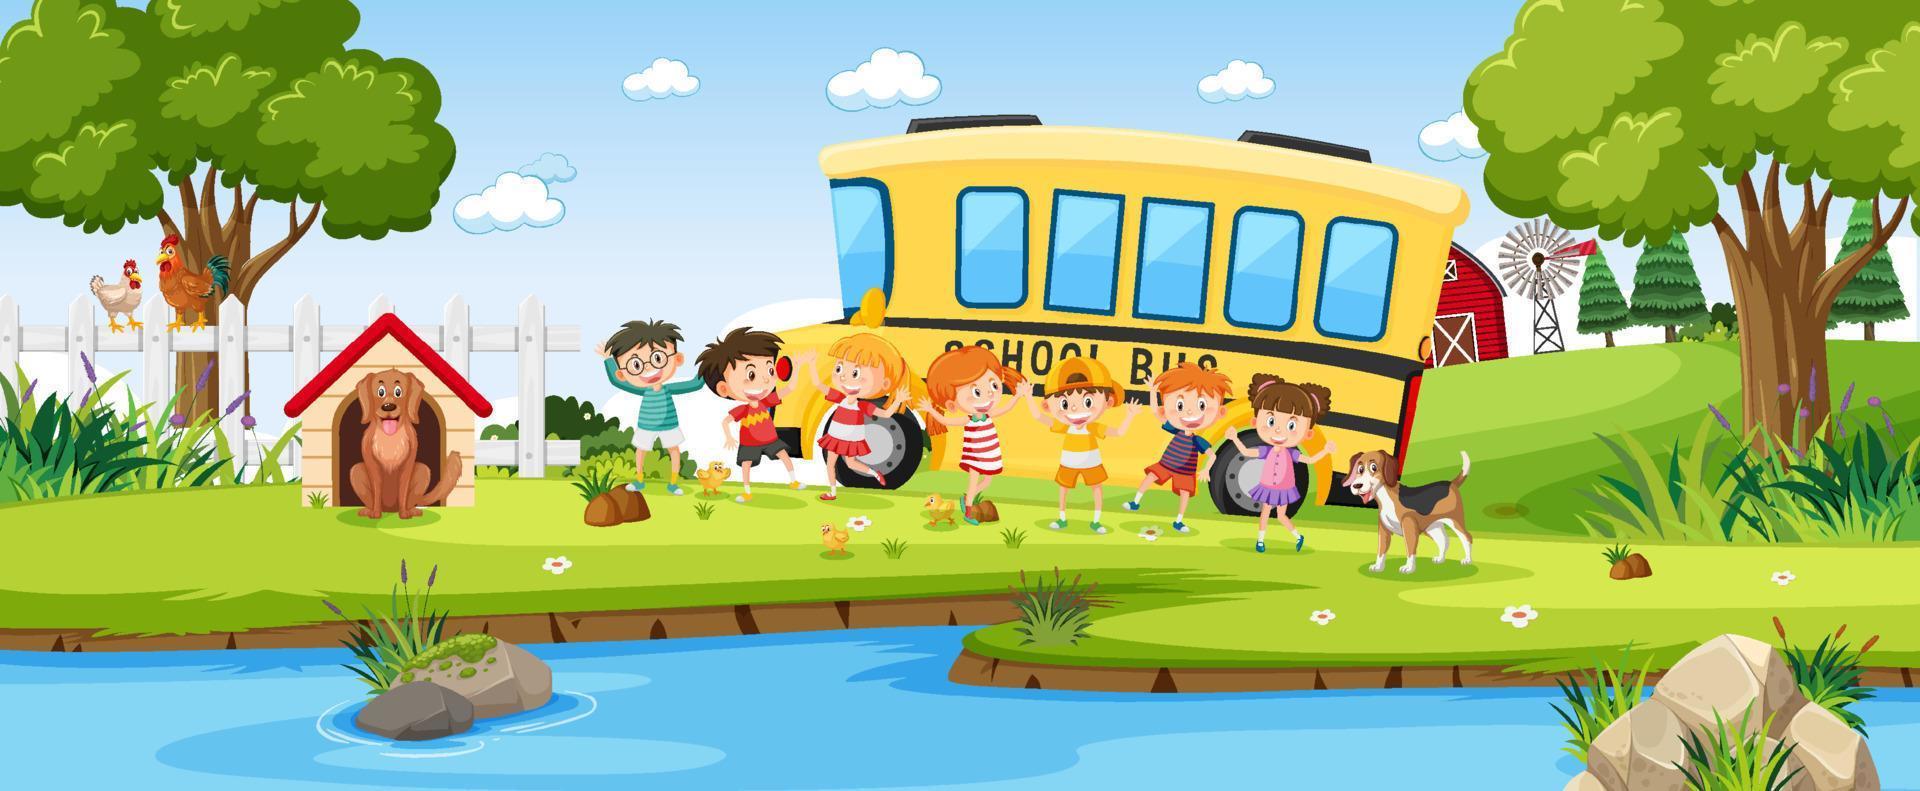 barn och skolbuss i utomhusbakgrund vektor